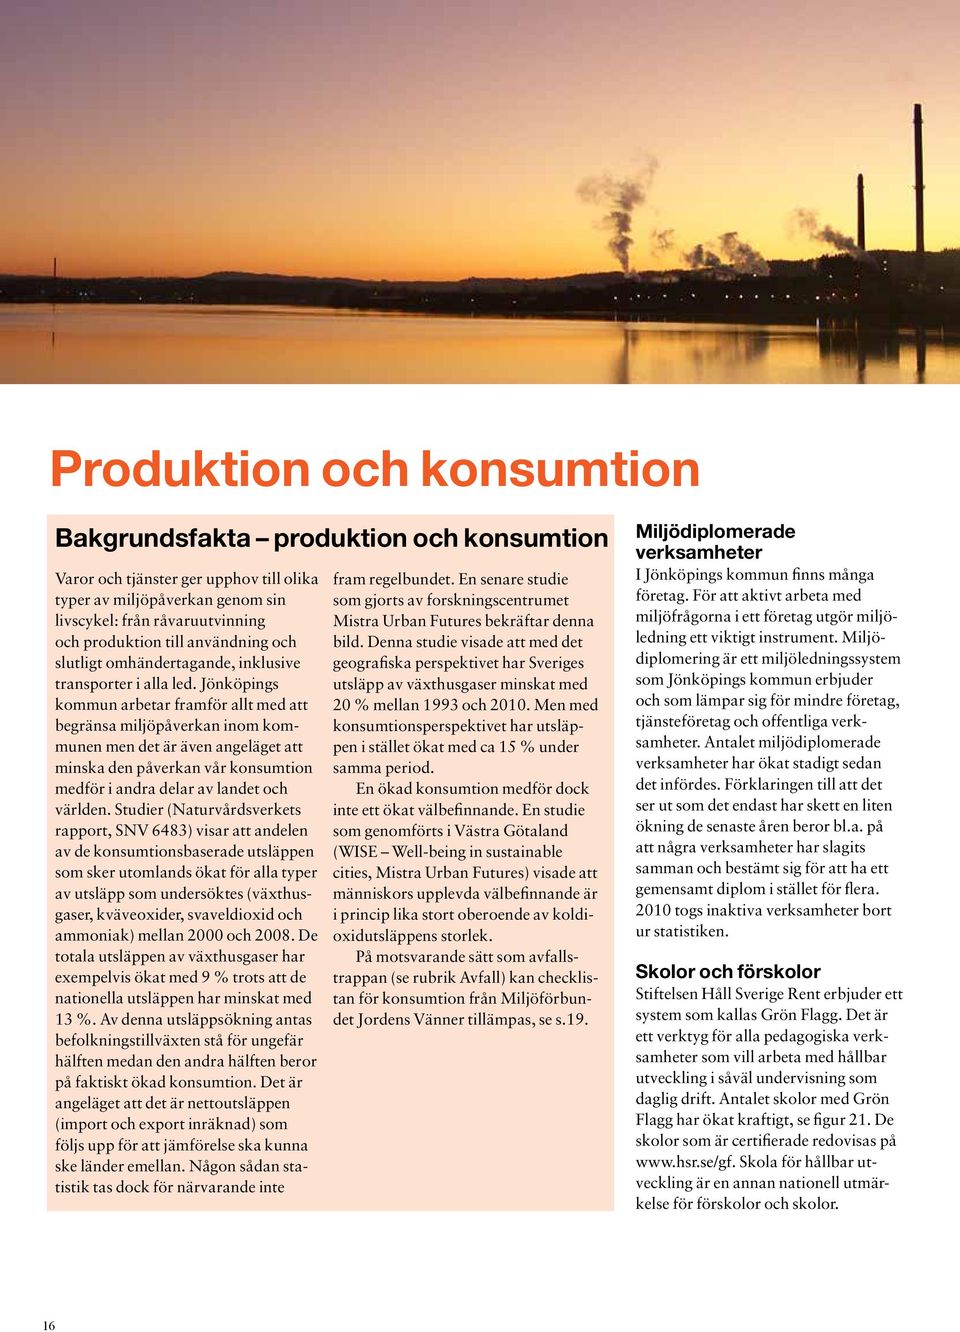 Jönköpings kommun arbetar framför allt med att begränsa miljöpåverkan inom kommunen men det är även angeläget att minska den påverkan vår konsumtion medför i andra delar av landet och världen.